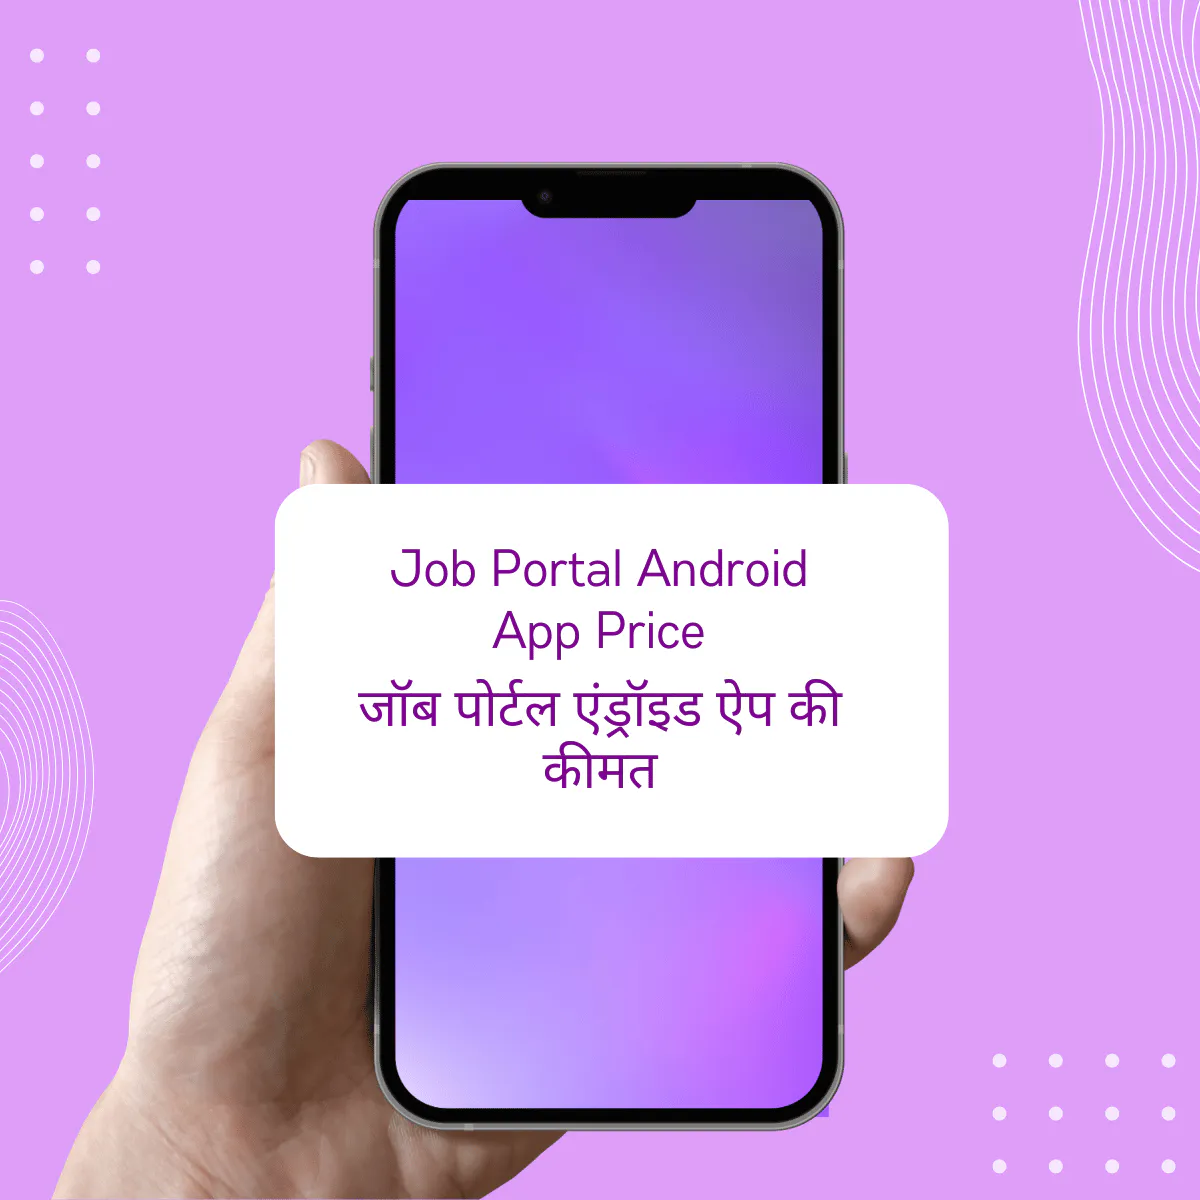 Job Portal Android App